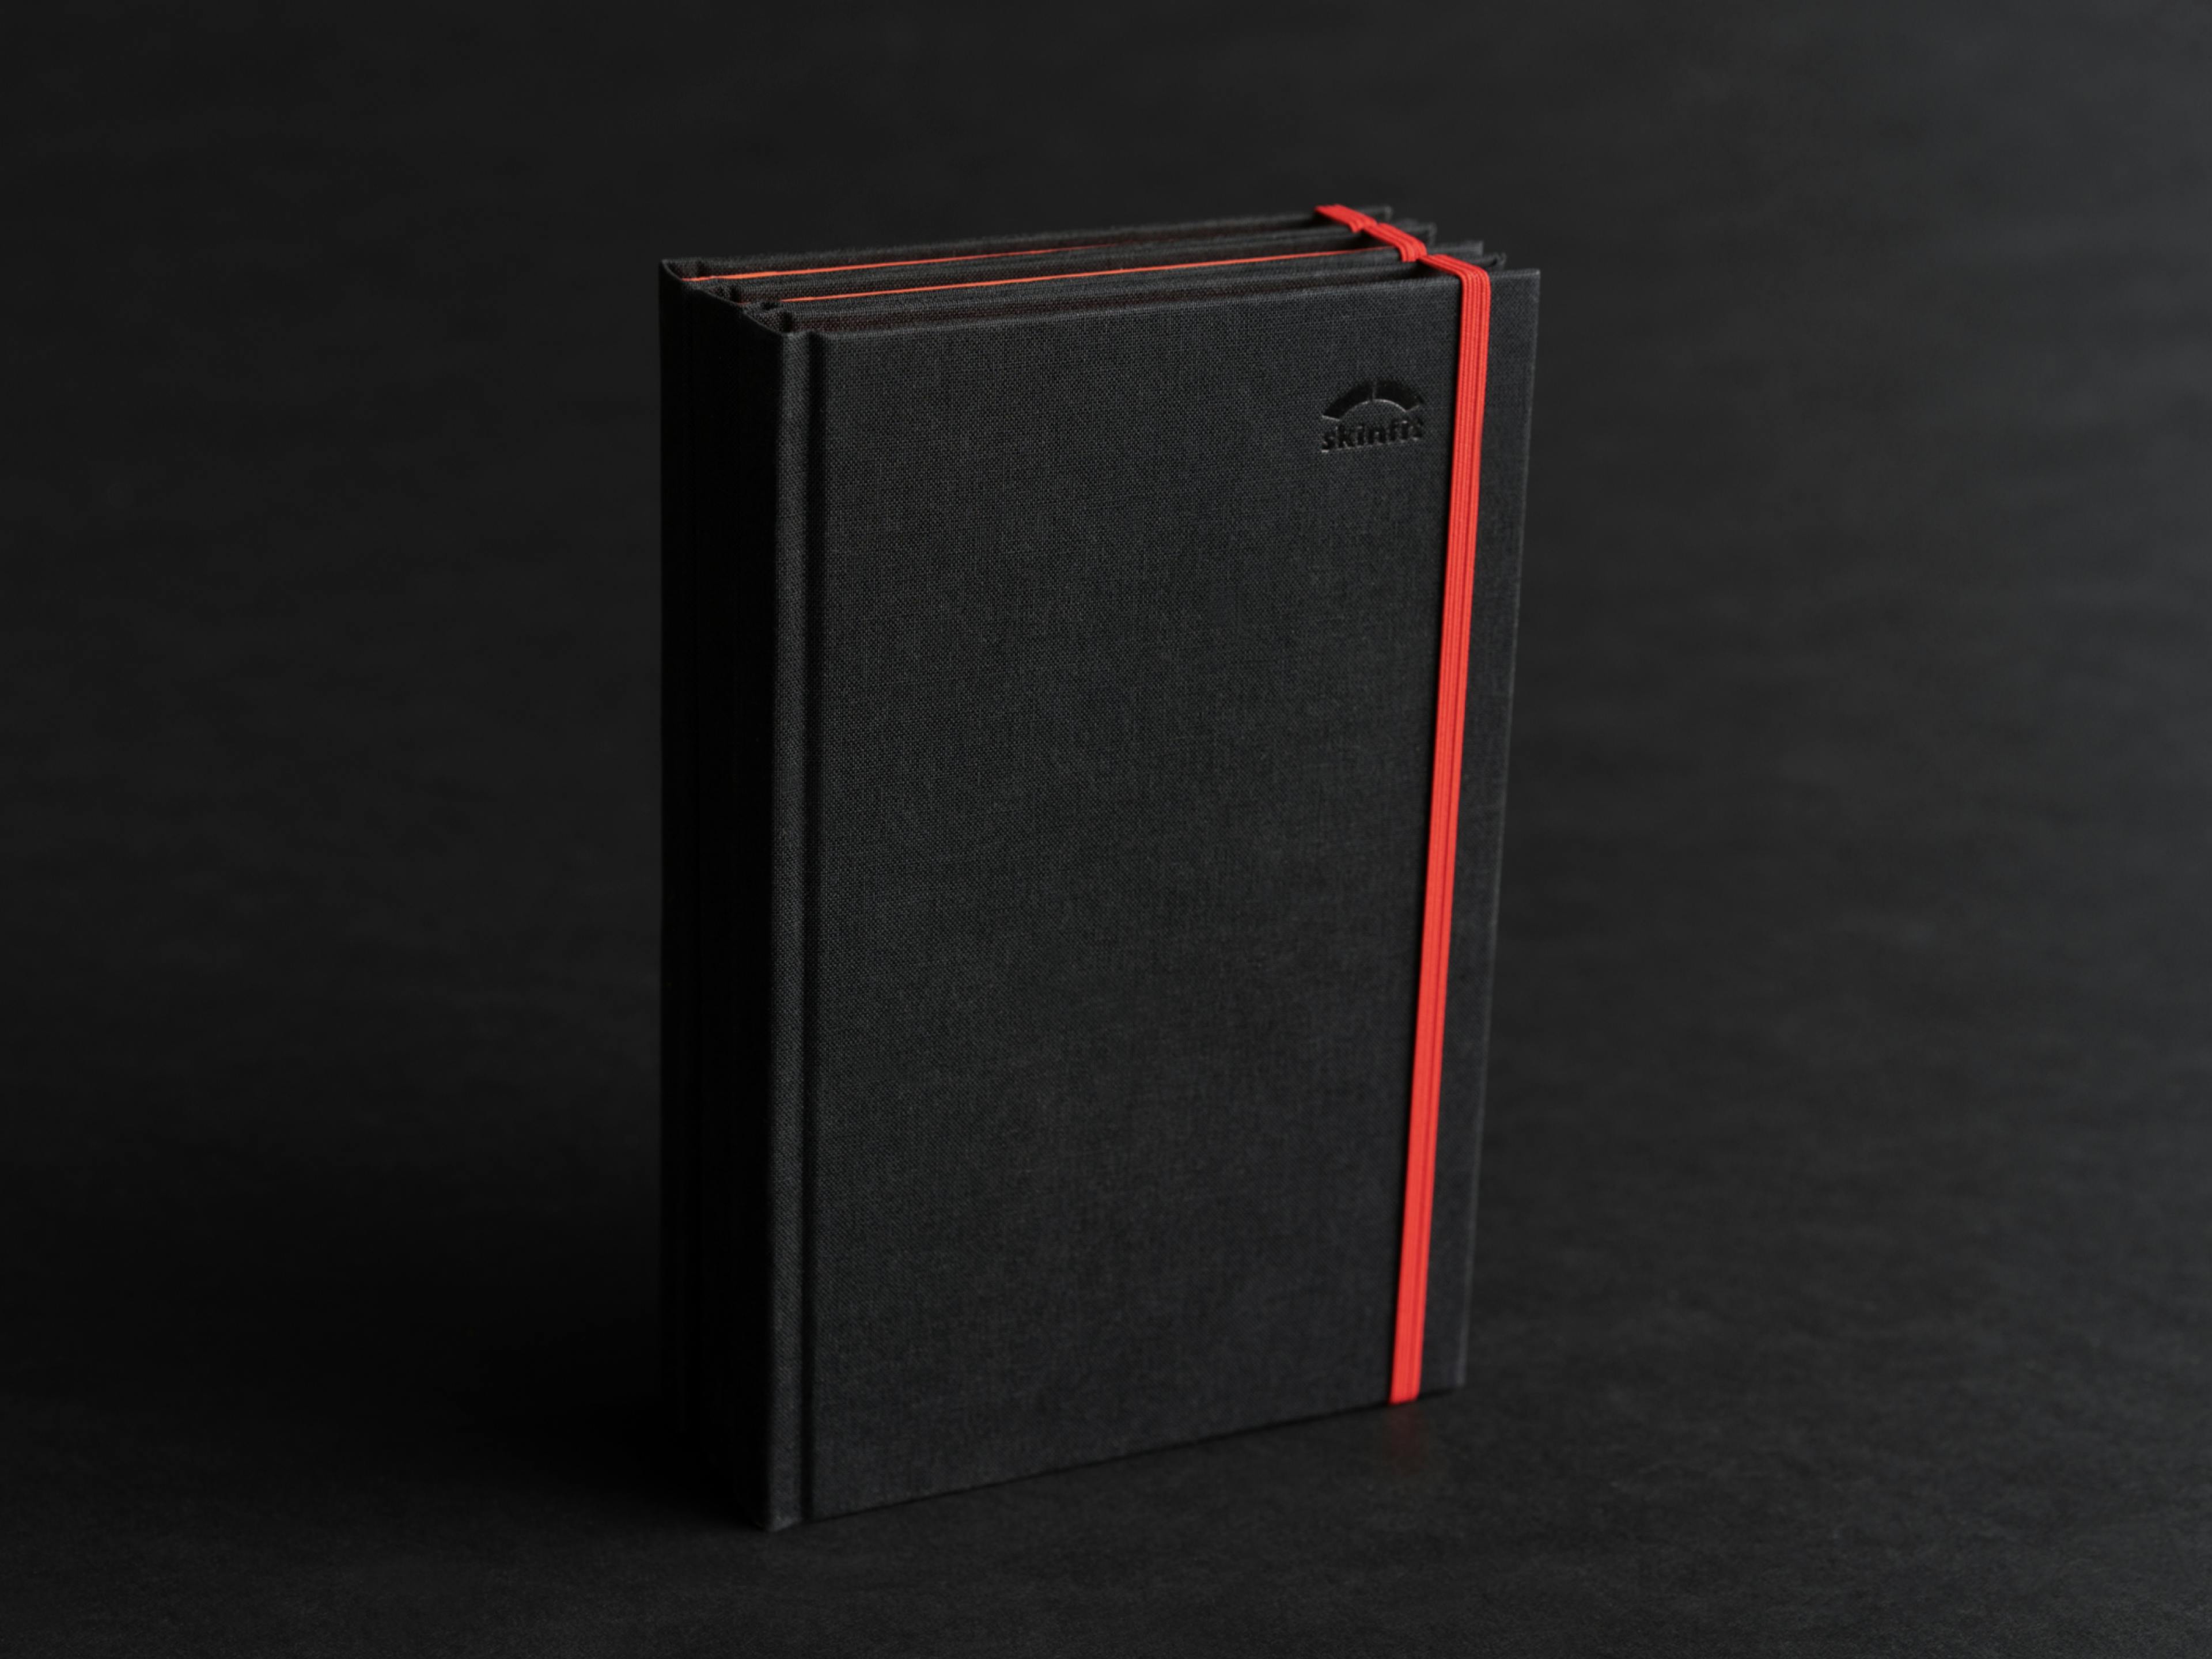 Foto von 3 skinfit brandbooks auf schwarzem Hintergrund, schwarzer Leineneinband, Blindprägung und rotes Gummiband © gm gobiq